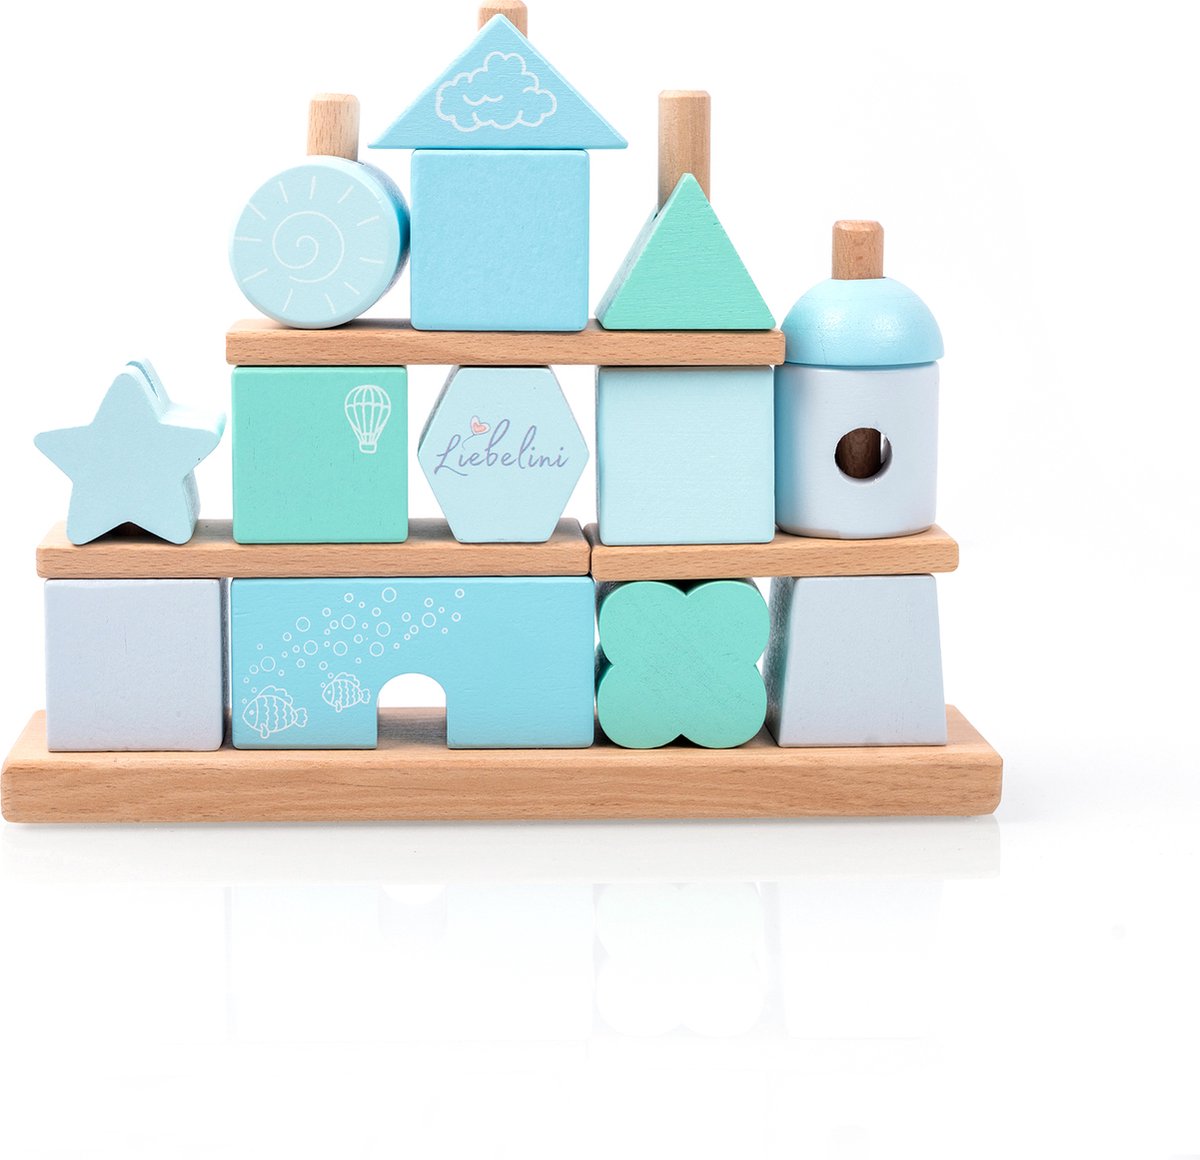 Liebelini - houten speelgoed - blokken toren - blauw groen - stapel blokken